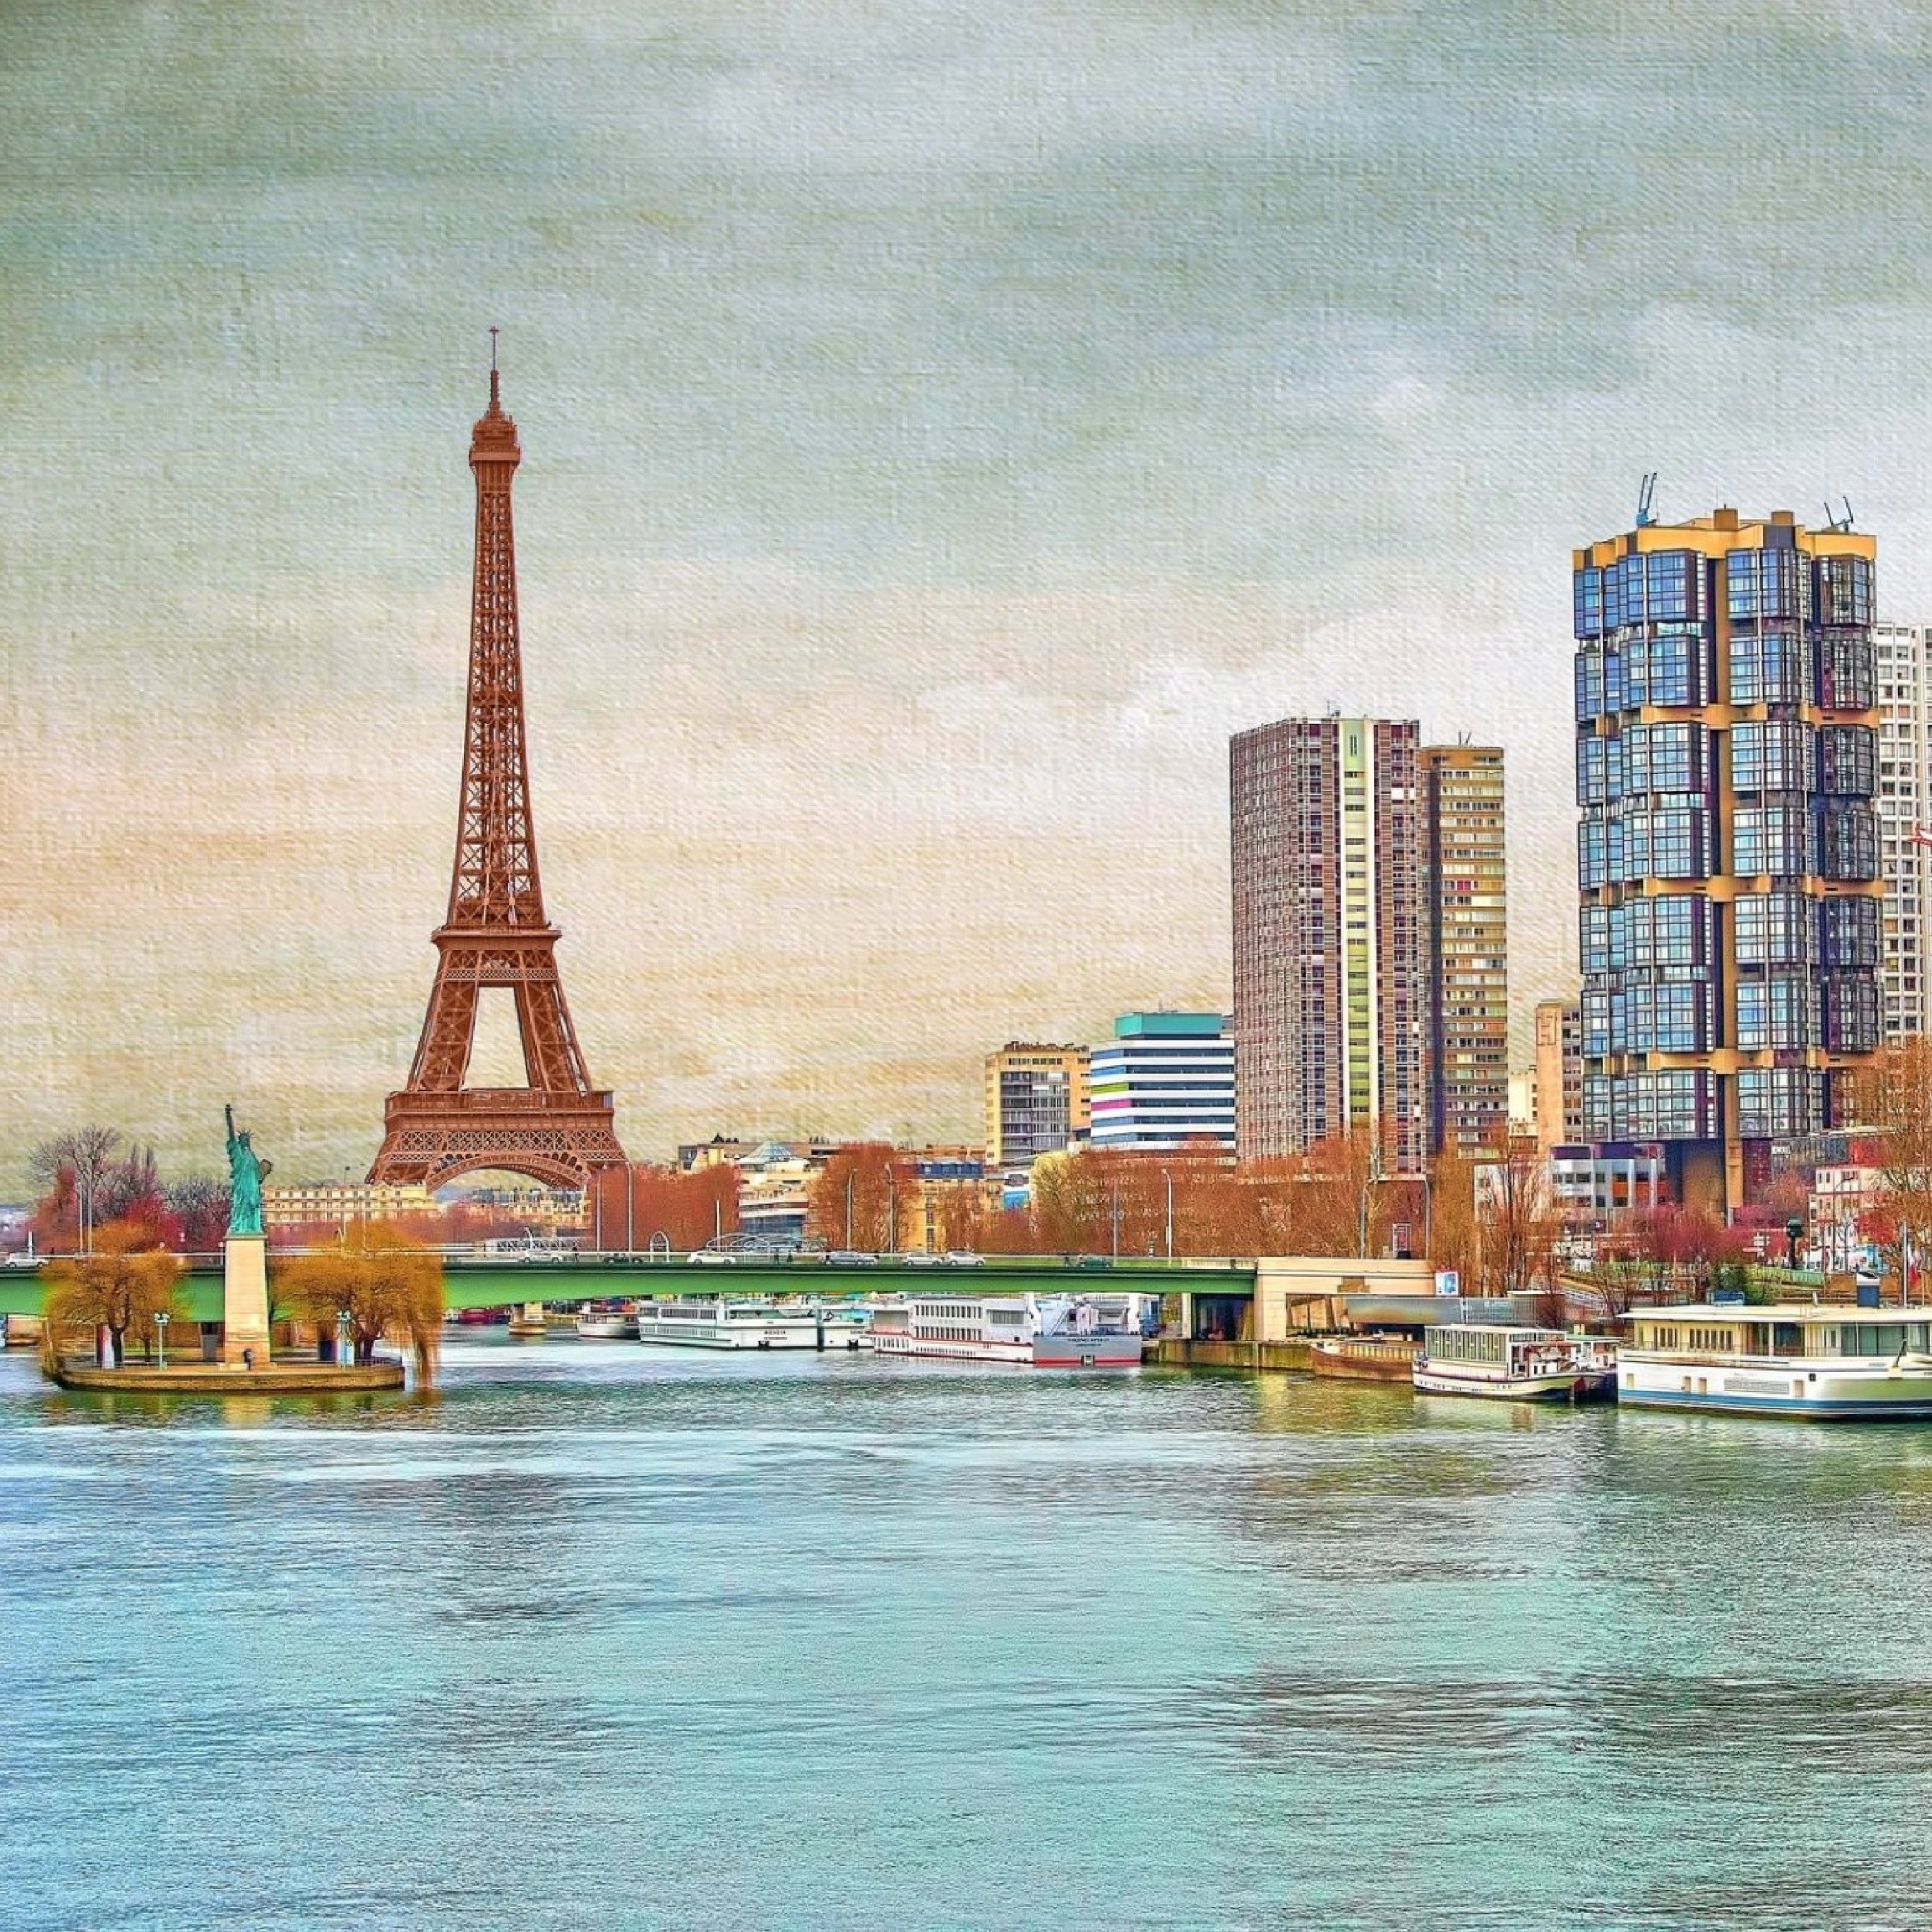 Das Eiffel Tower and Paris 16th District Wallpaper 2048x2048